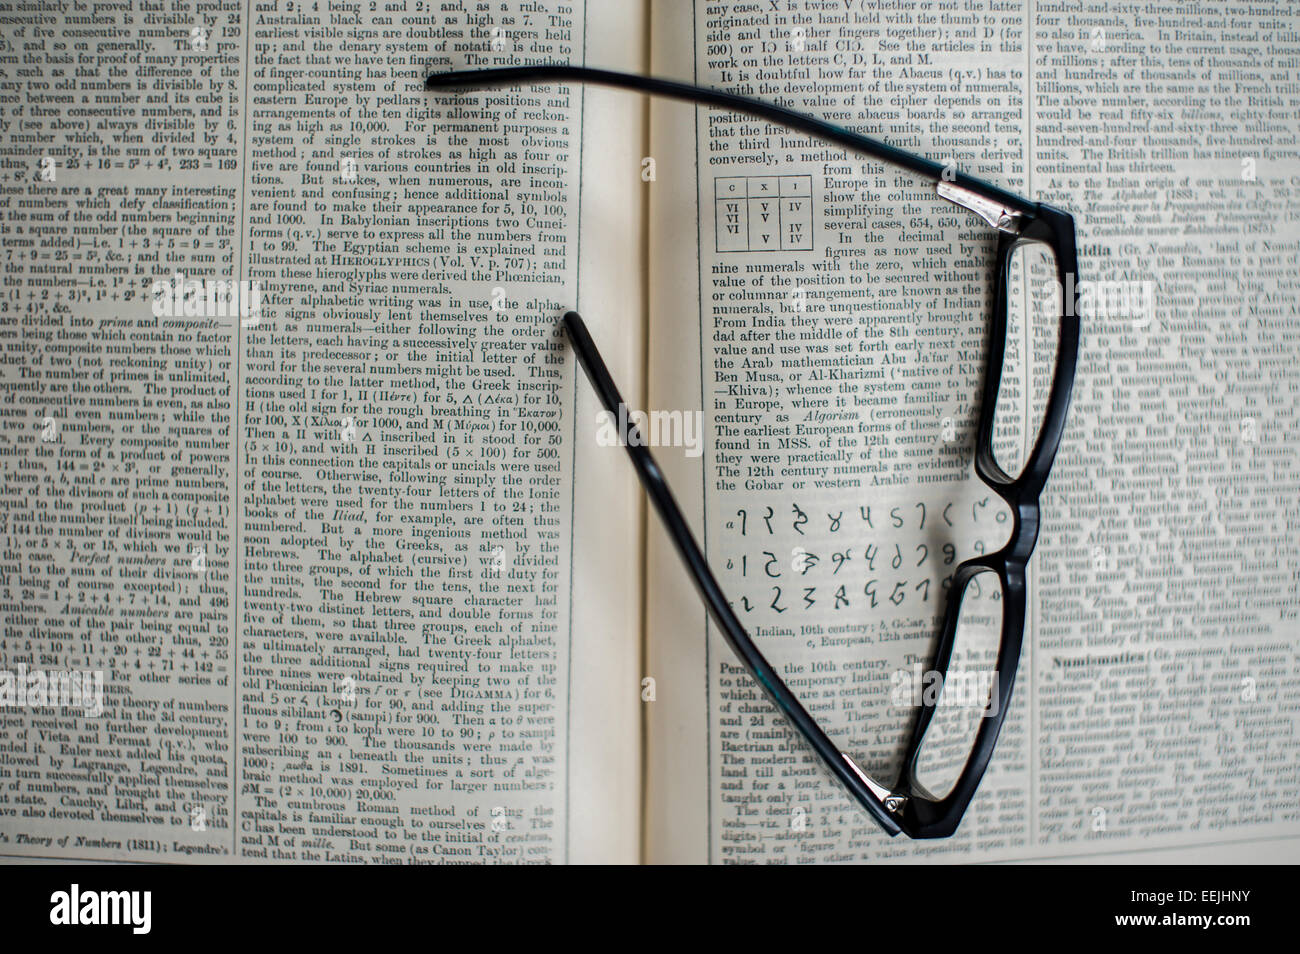 Par de gafas de lectura apoyada en una enciclopedia abierta Foto de stock